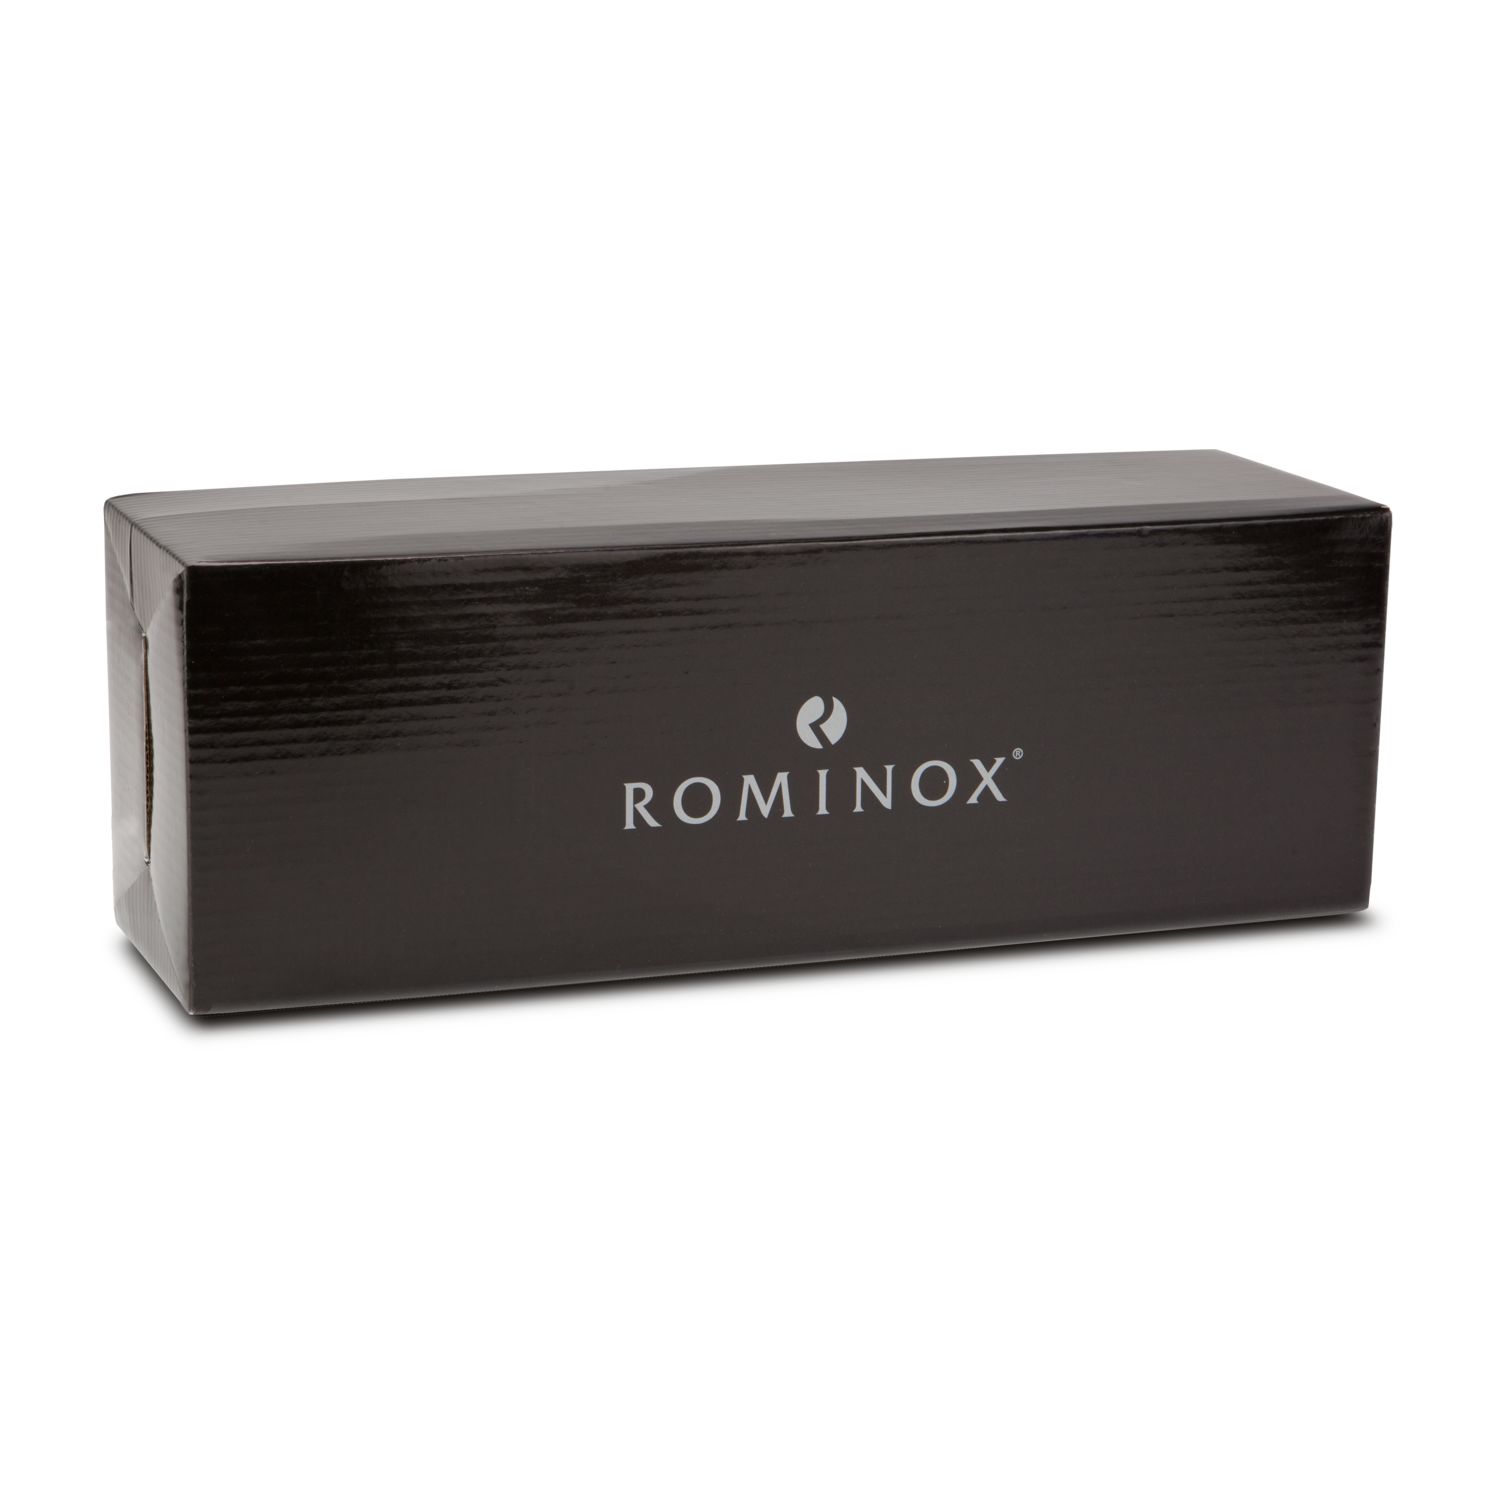 ROMINOX® Weinaccessoirekiste // Vino Classic